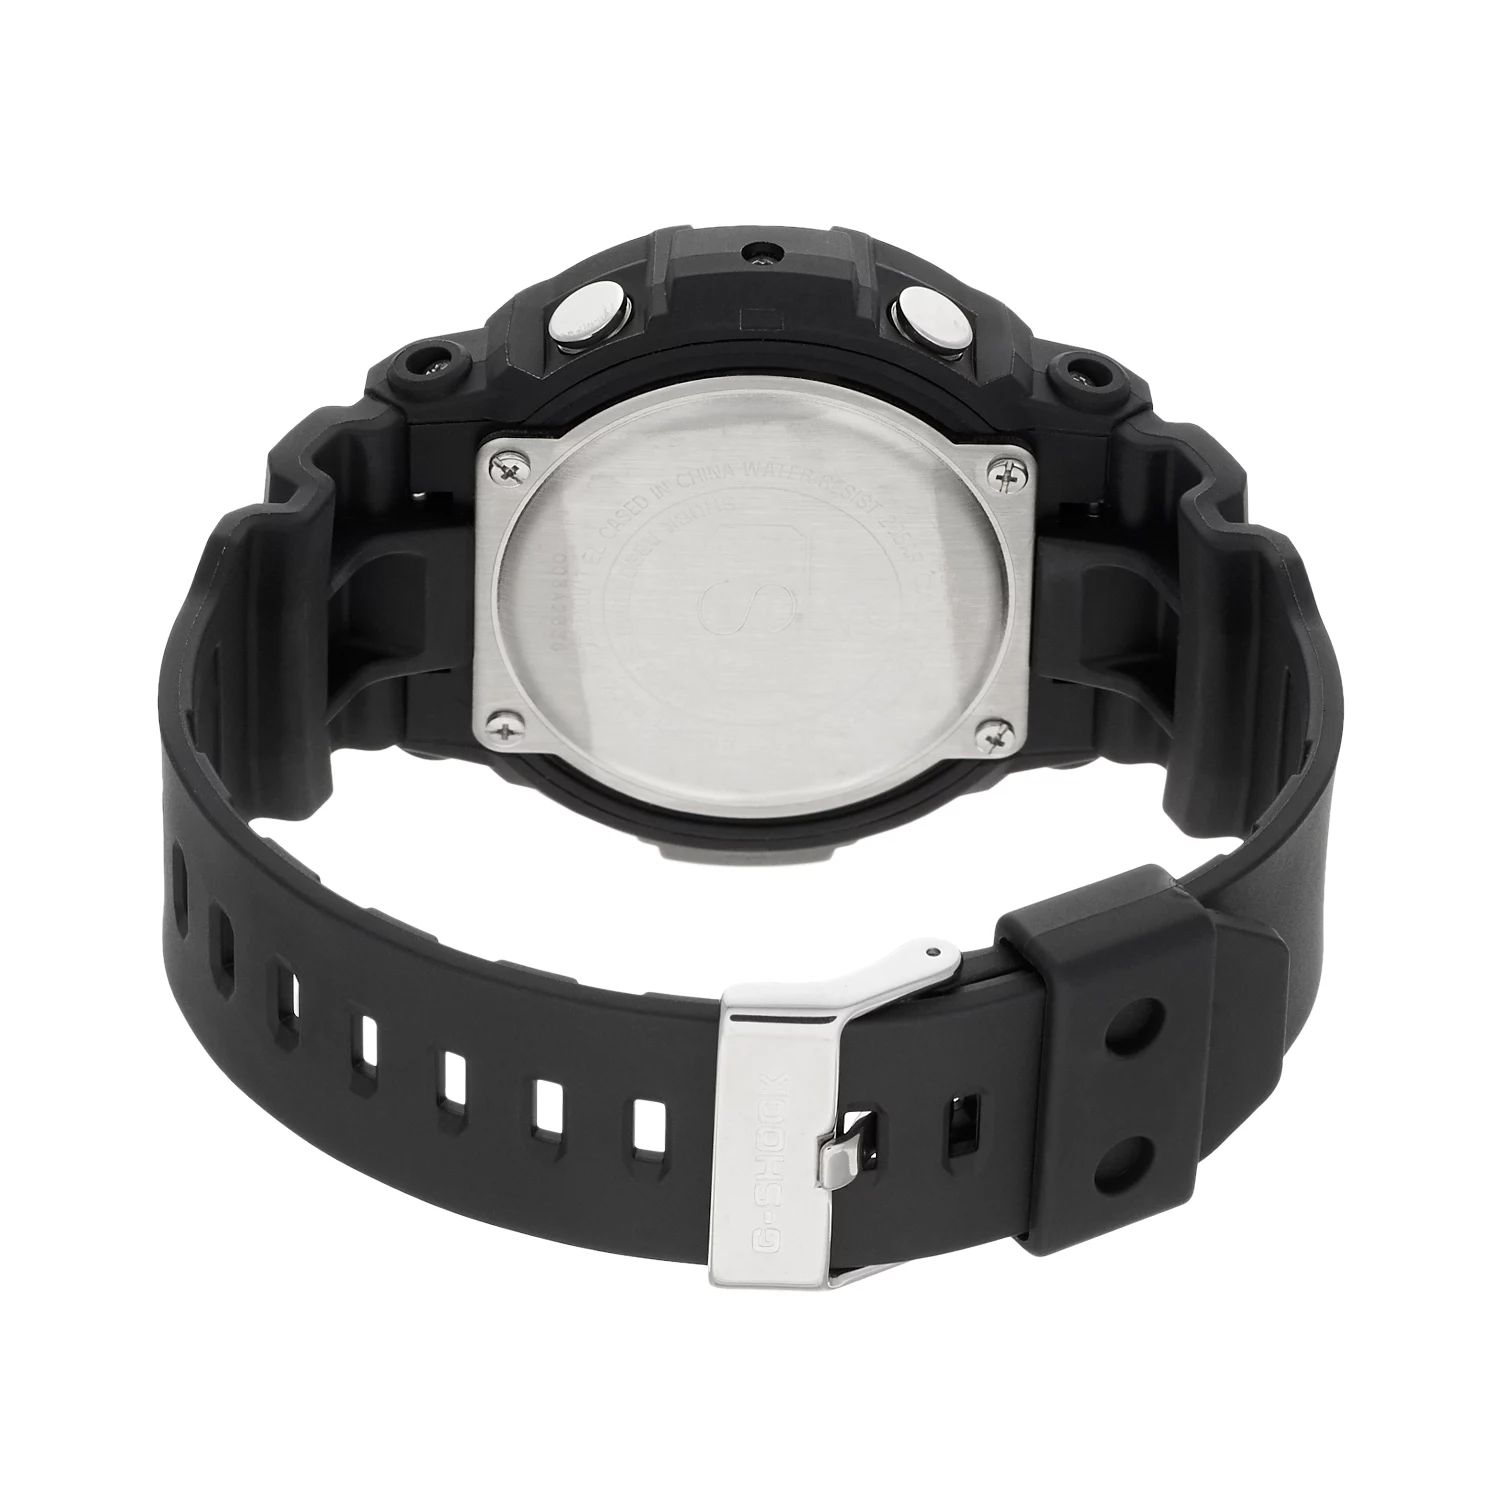 Мужские аналогово-цифровые часы G-Shock Tough Solar с солнечной батареей — GAS100B-1A2 Casio цена и фото